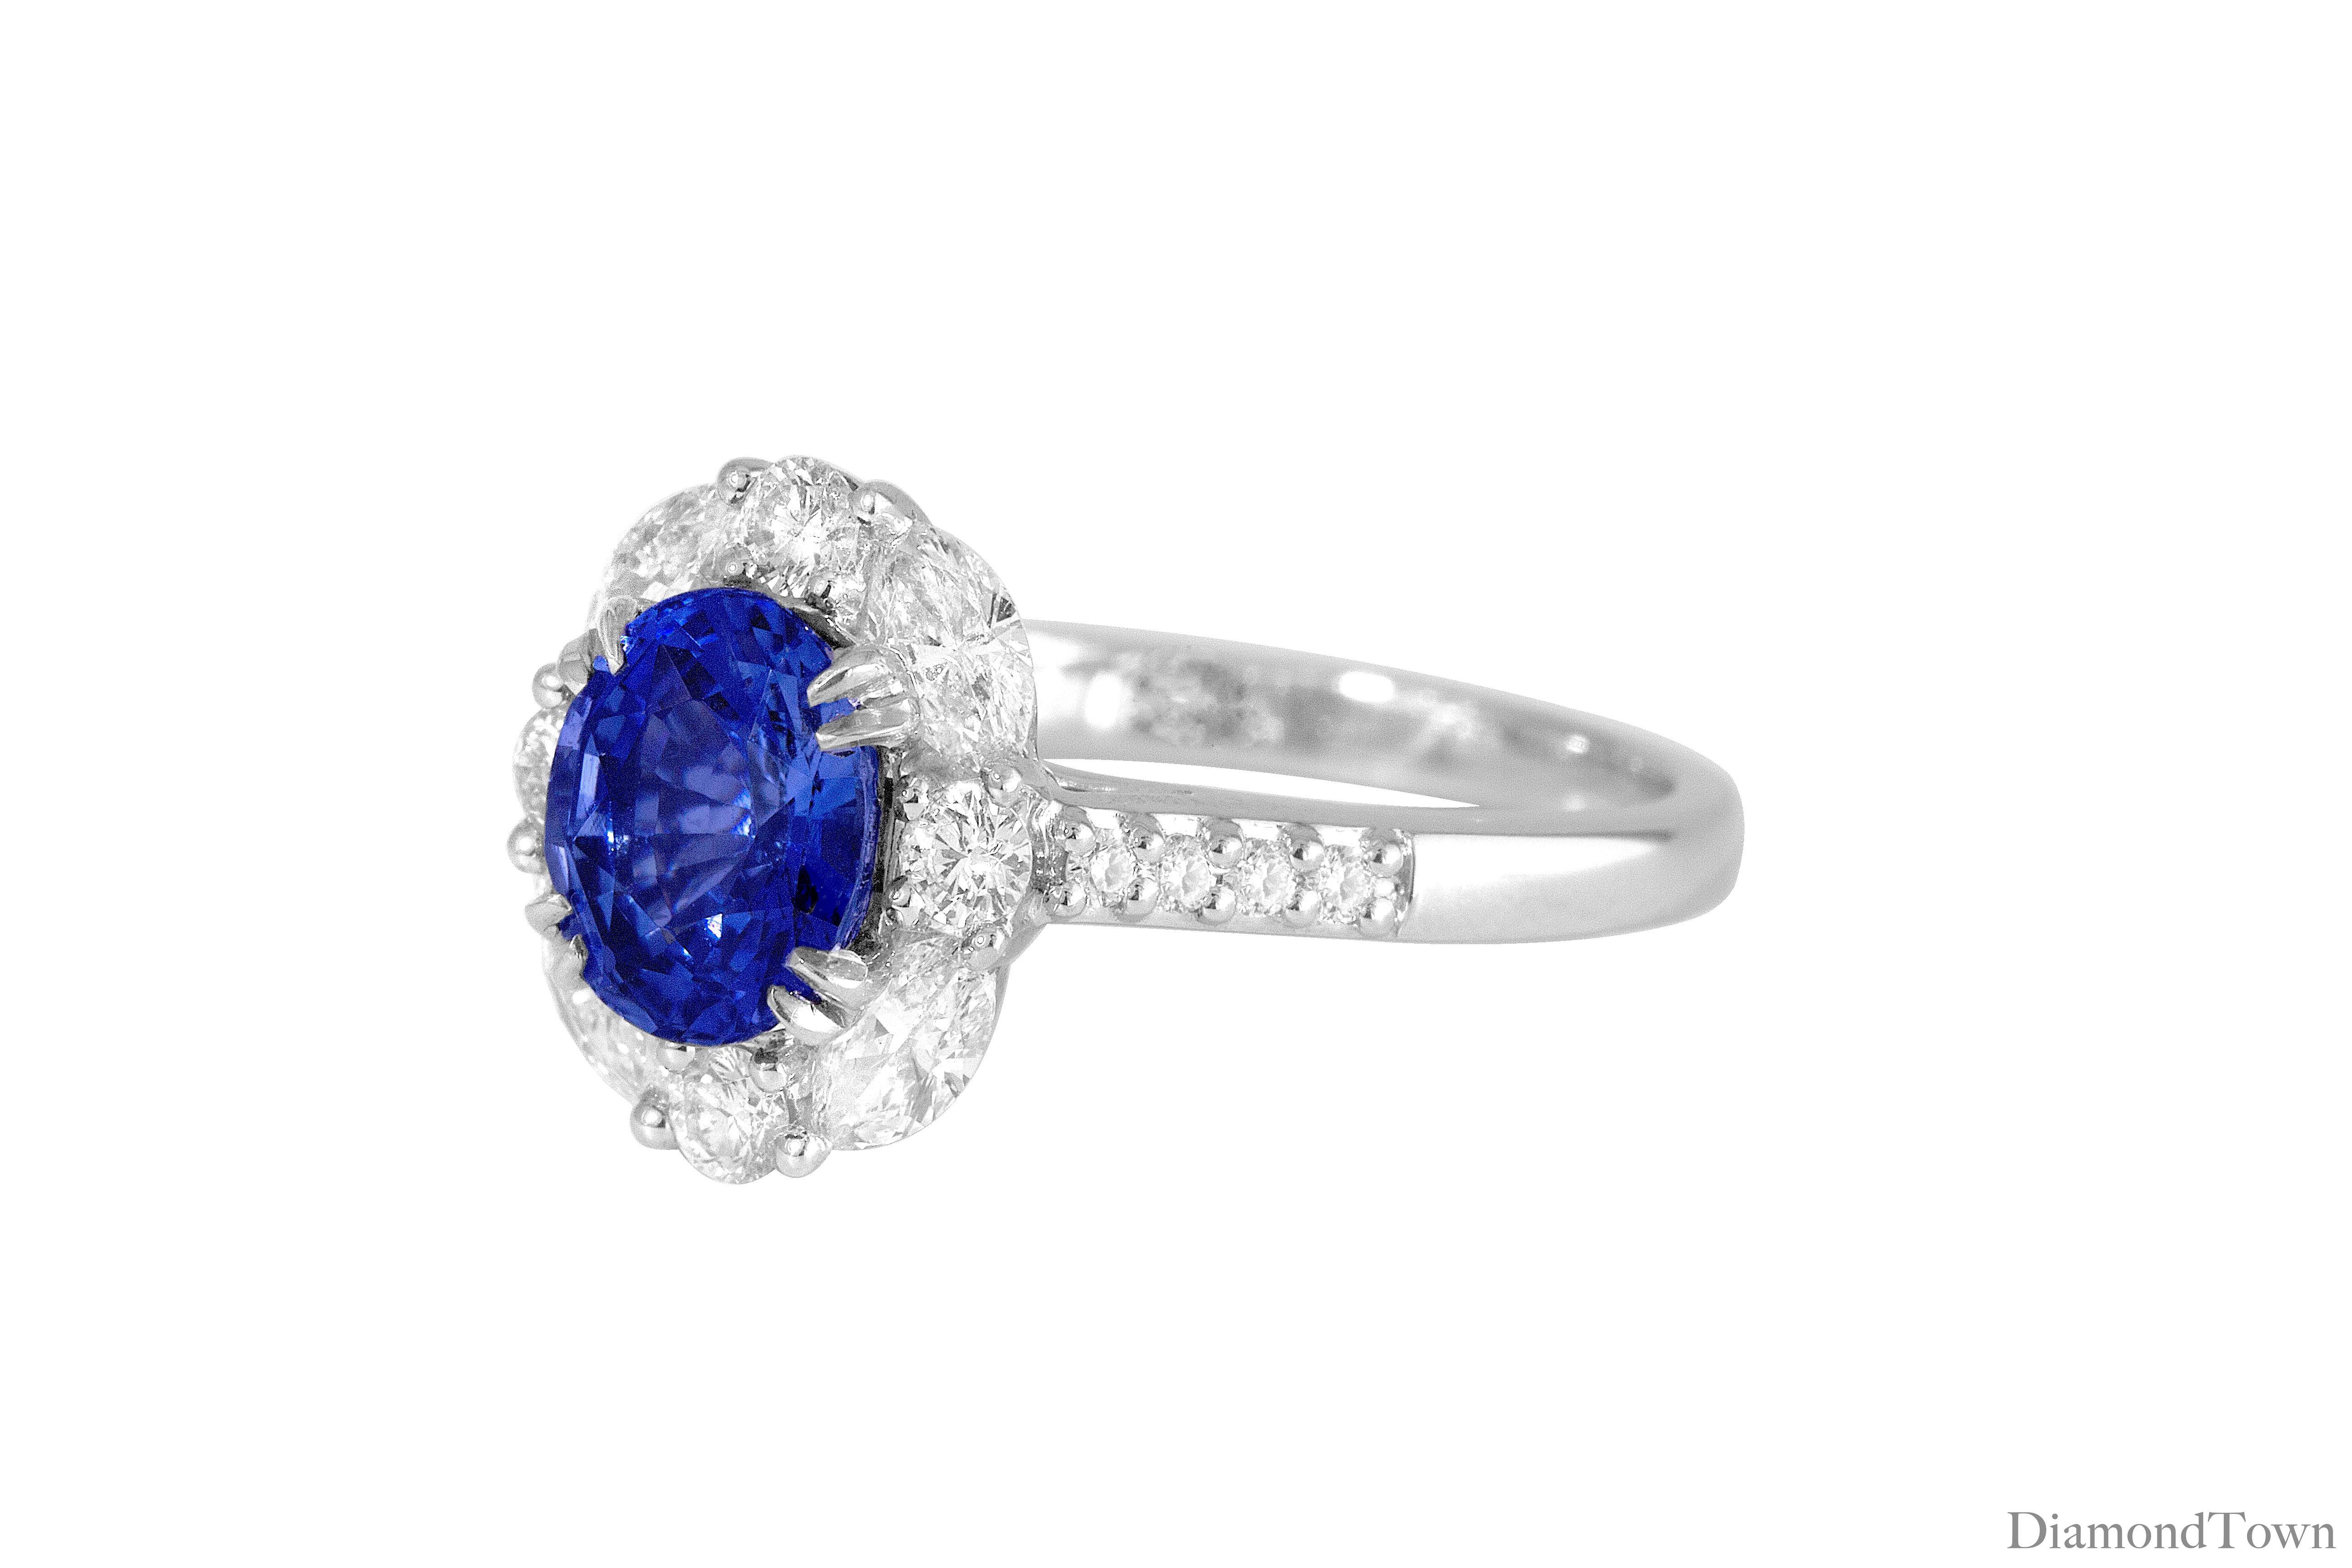 (DiamondTown) Dieser wunderschöne Ring hat einen GIA-zertifizierten Ceylon-Saphir im Ovalschliff mit einem Gewicht von 1,83 Karat, umgeben von einem Halo aus weißen Diamanten im Rund- und Marquise-Schliff. Zusätzliche Diamanten schmücken den